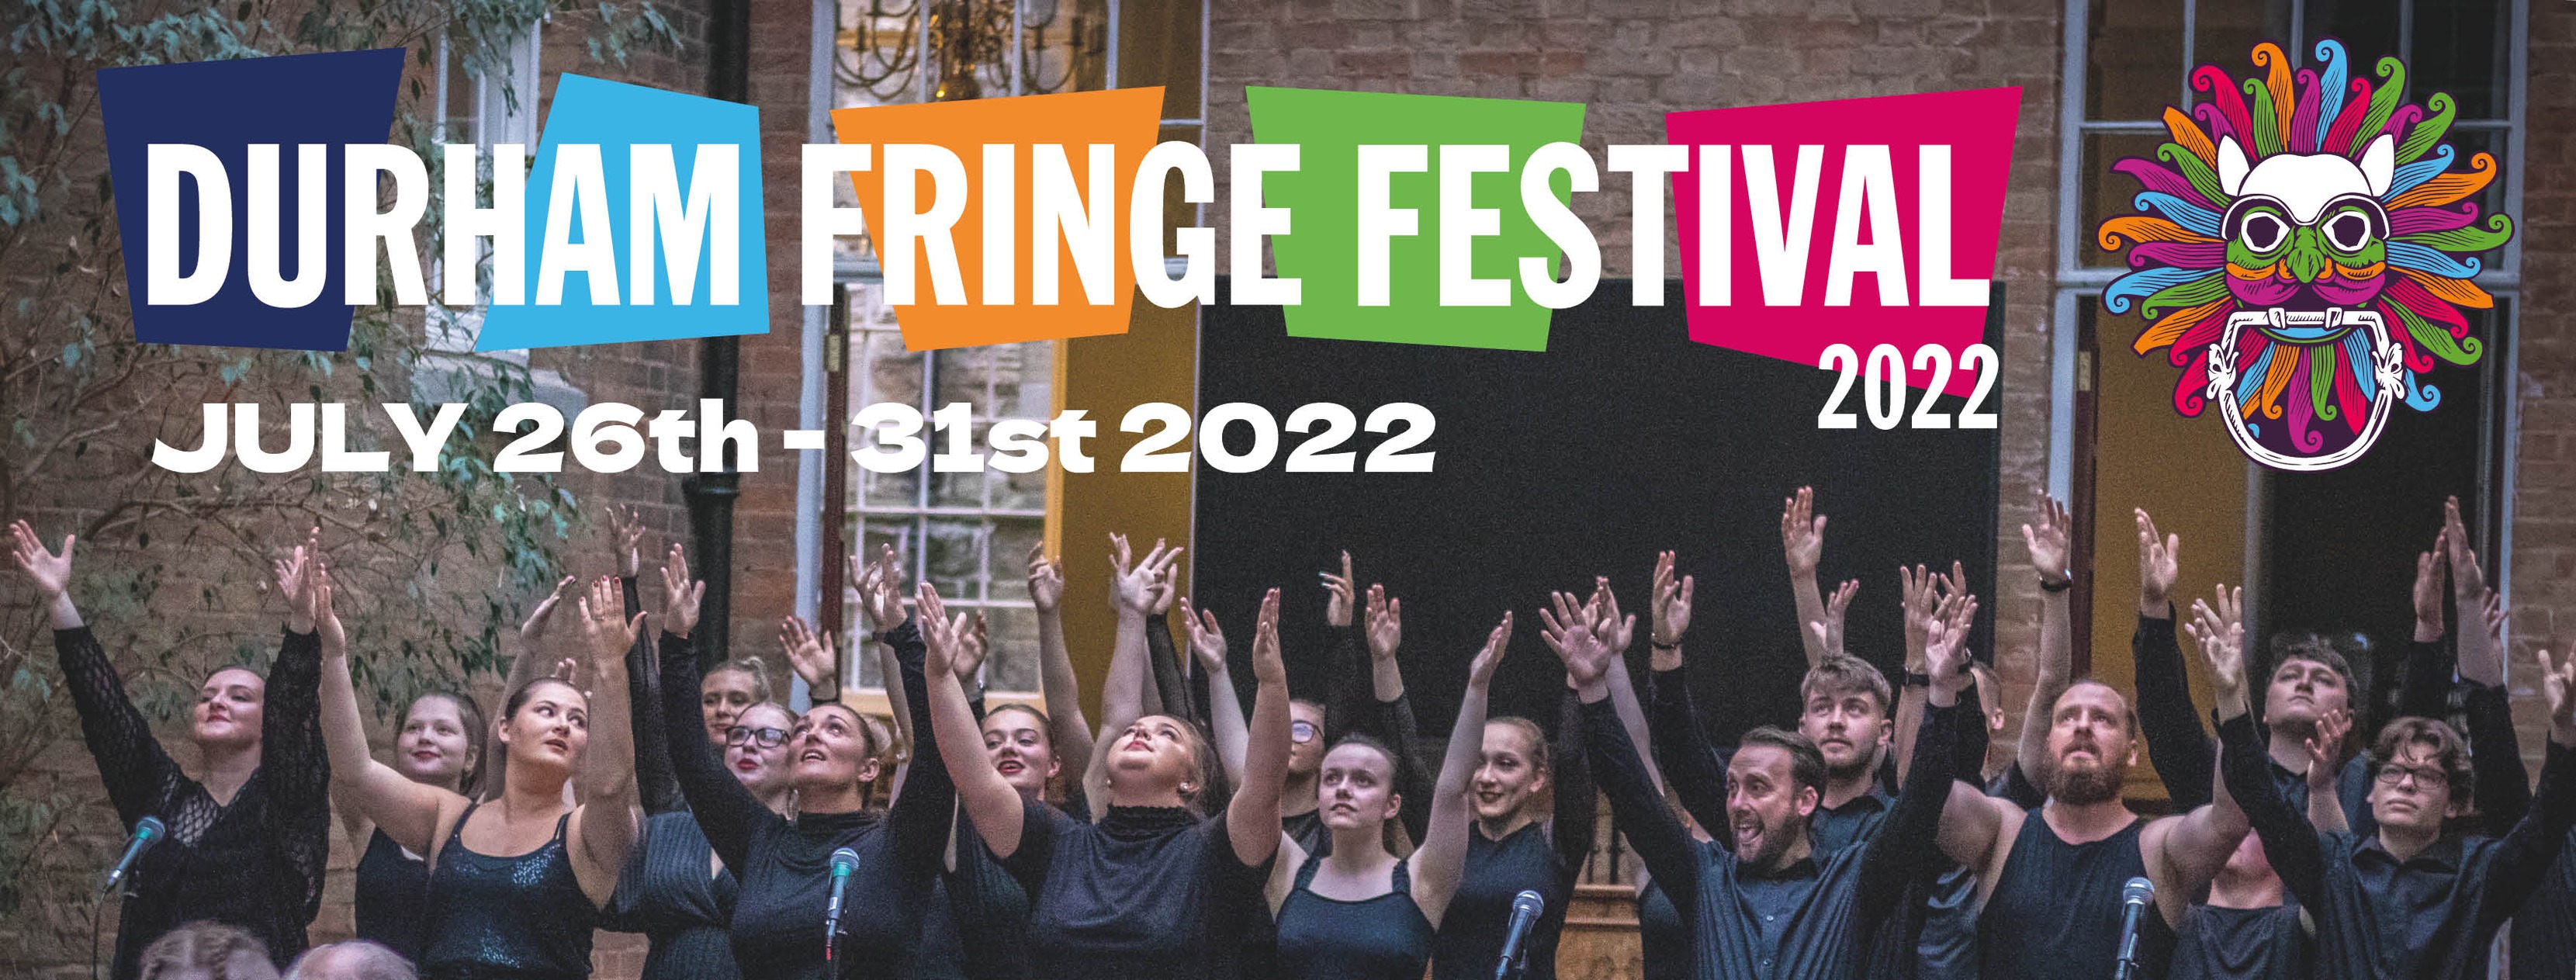 Durham Fringe Festival Poster